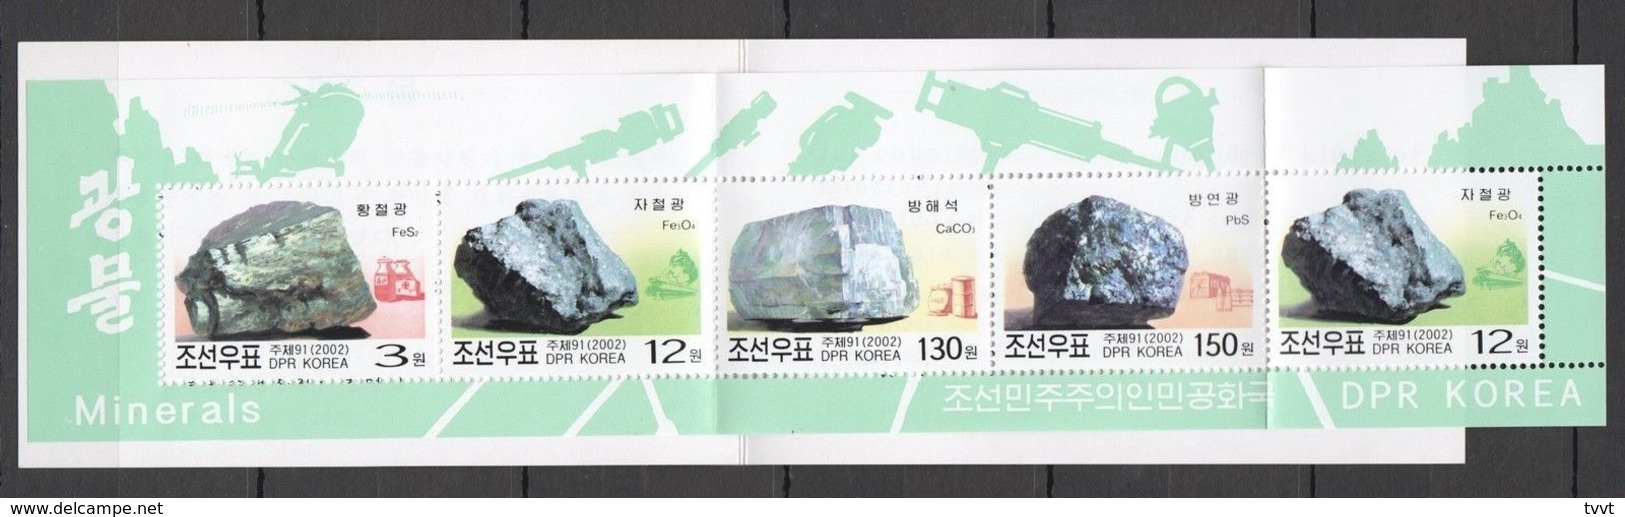 North Korea, 2002. [02-1] Minerals (booklet) - Minerals